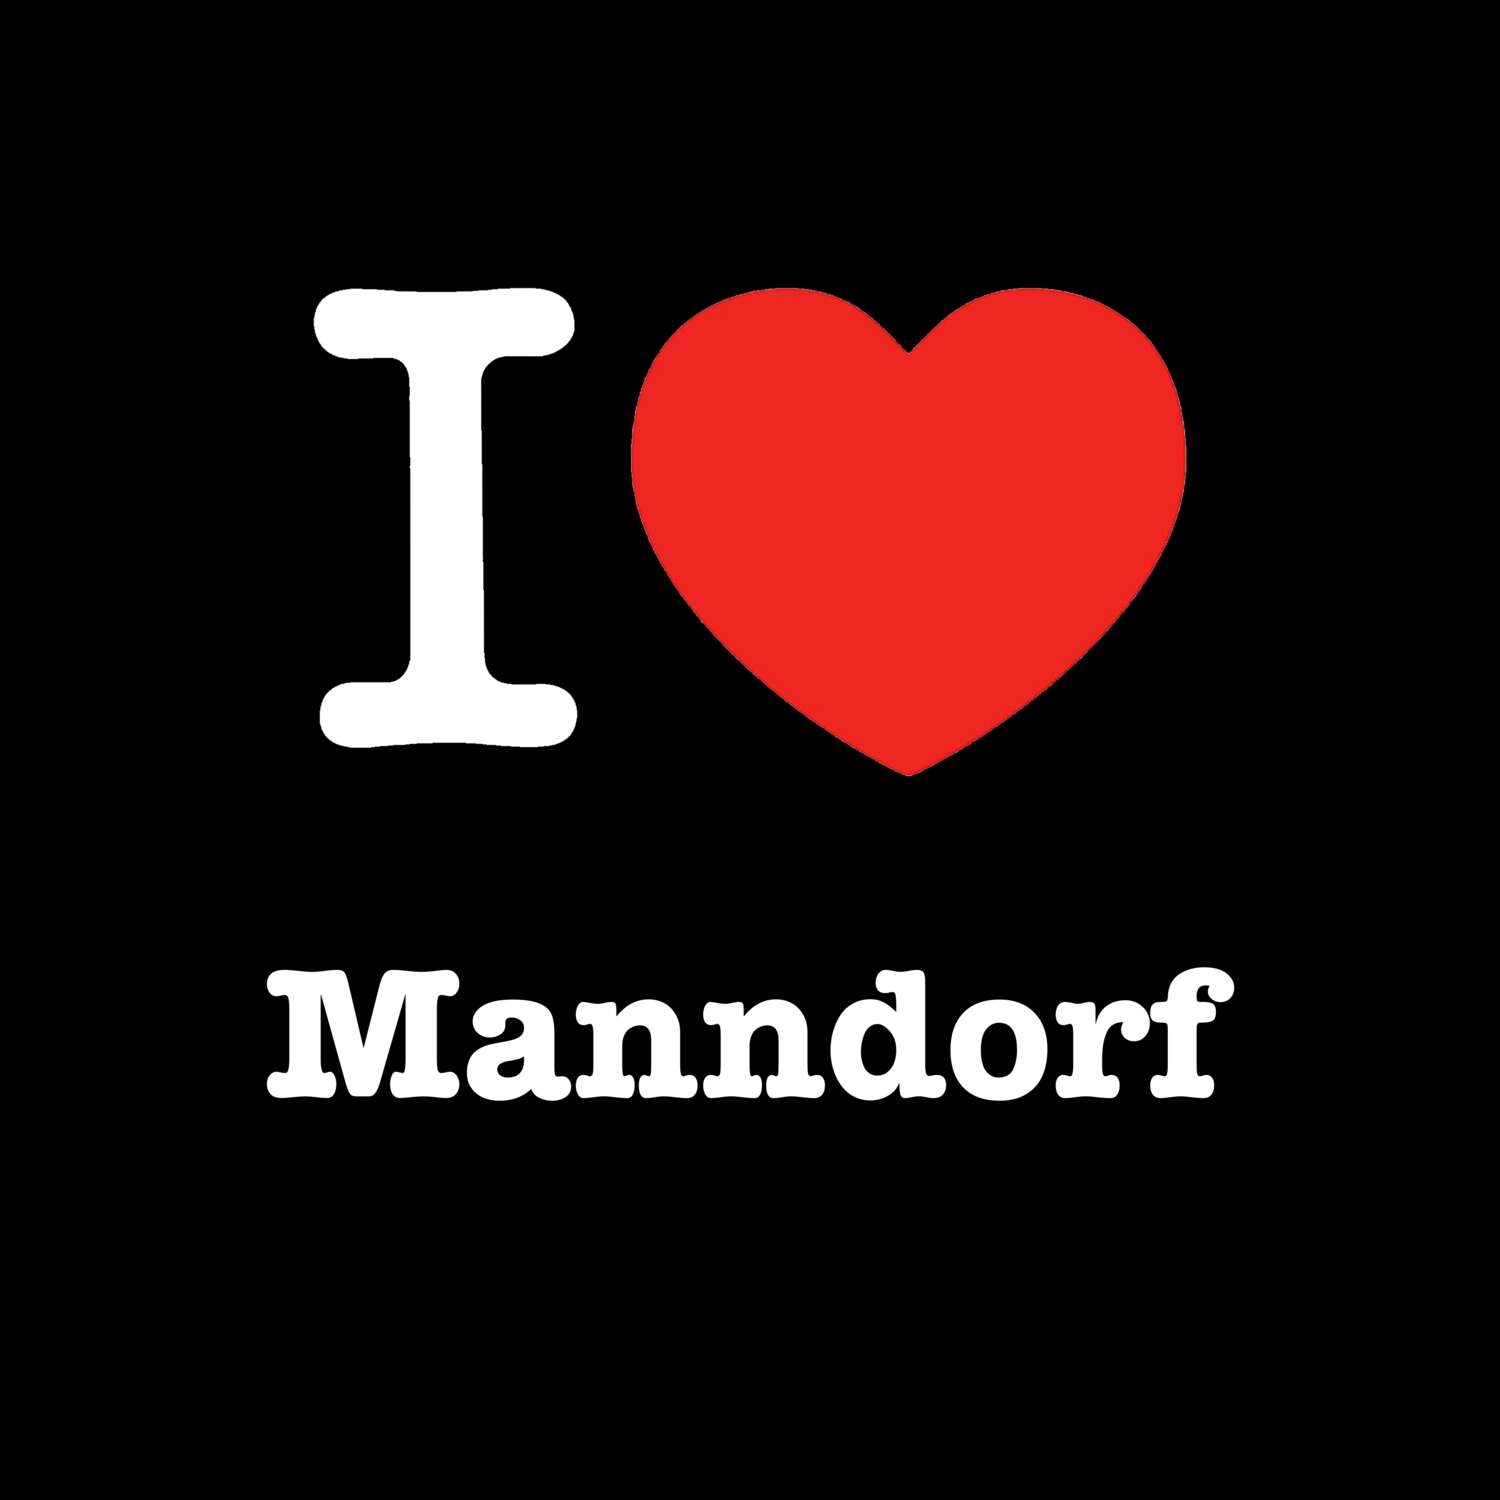 Manndorf T-Shirt »I love«